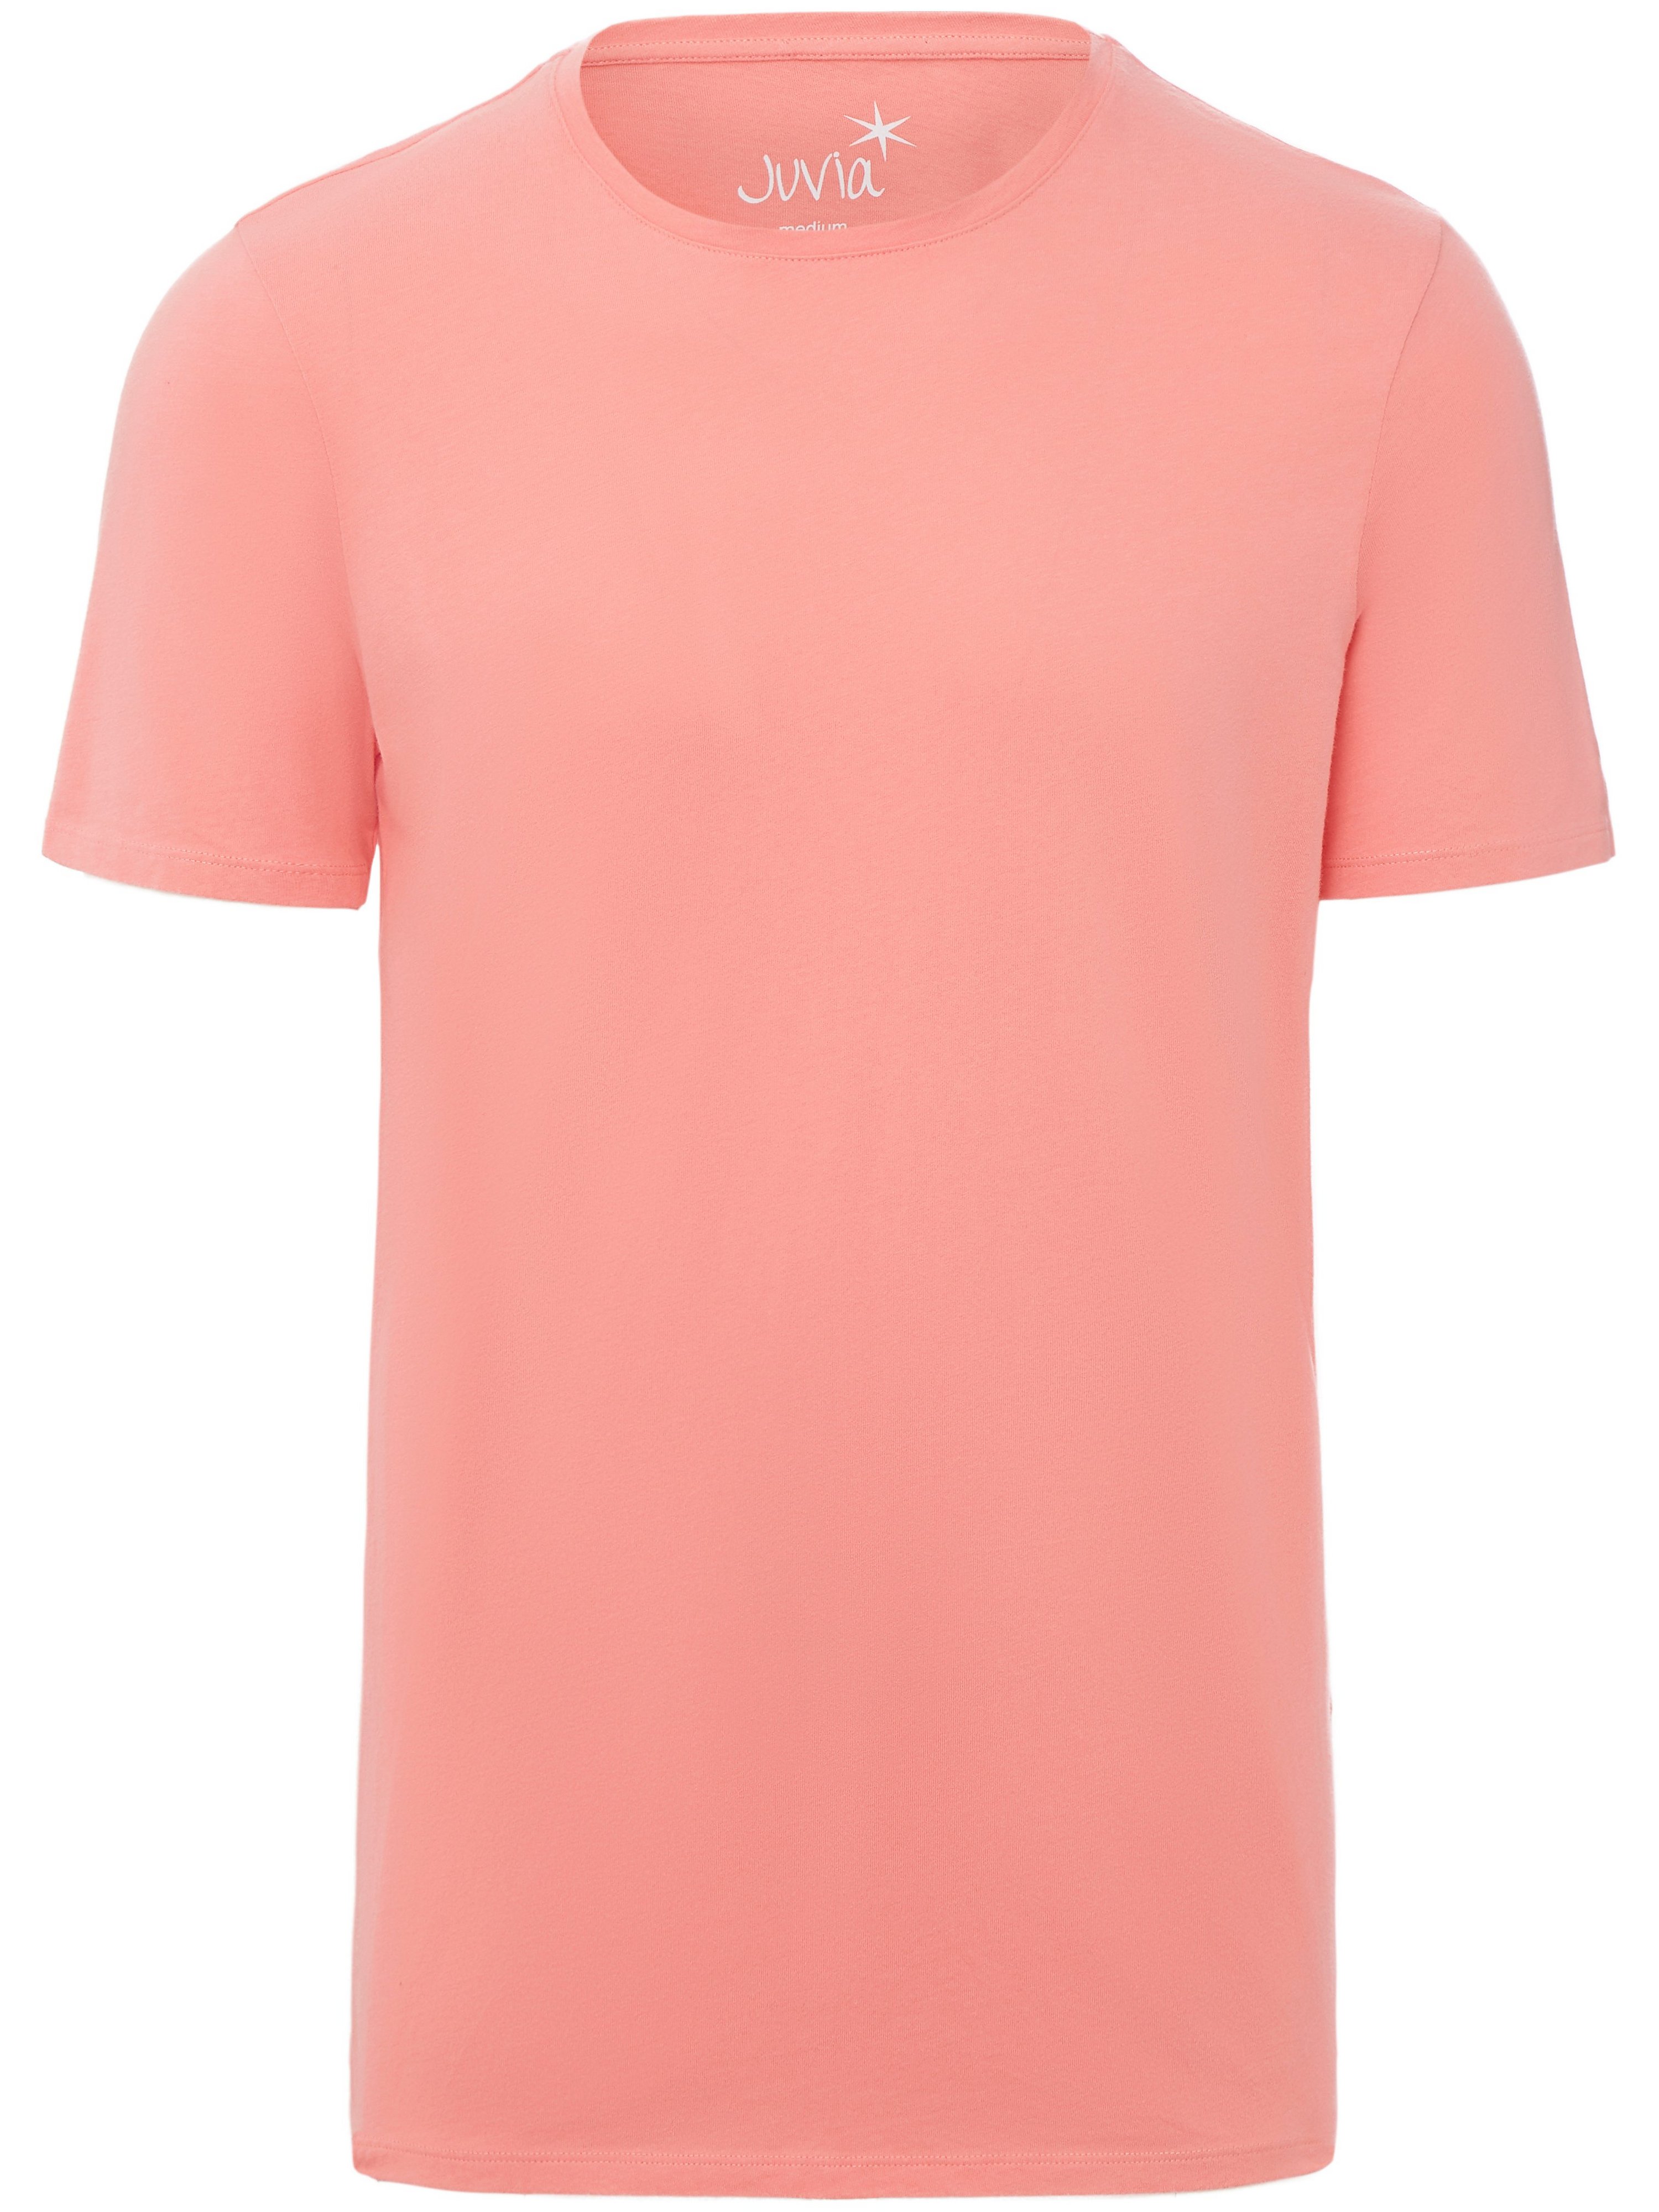 Shirt 100% katoen ronde hals Van Juvia roze